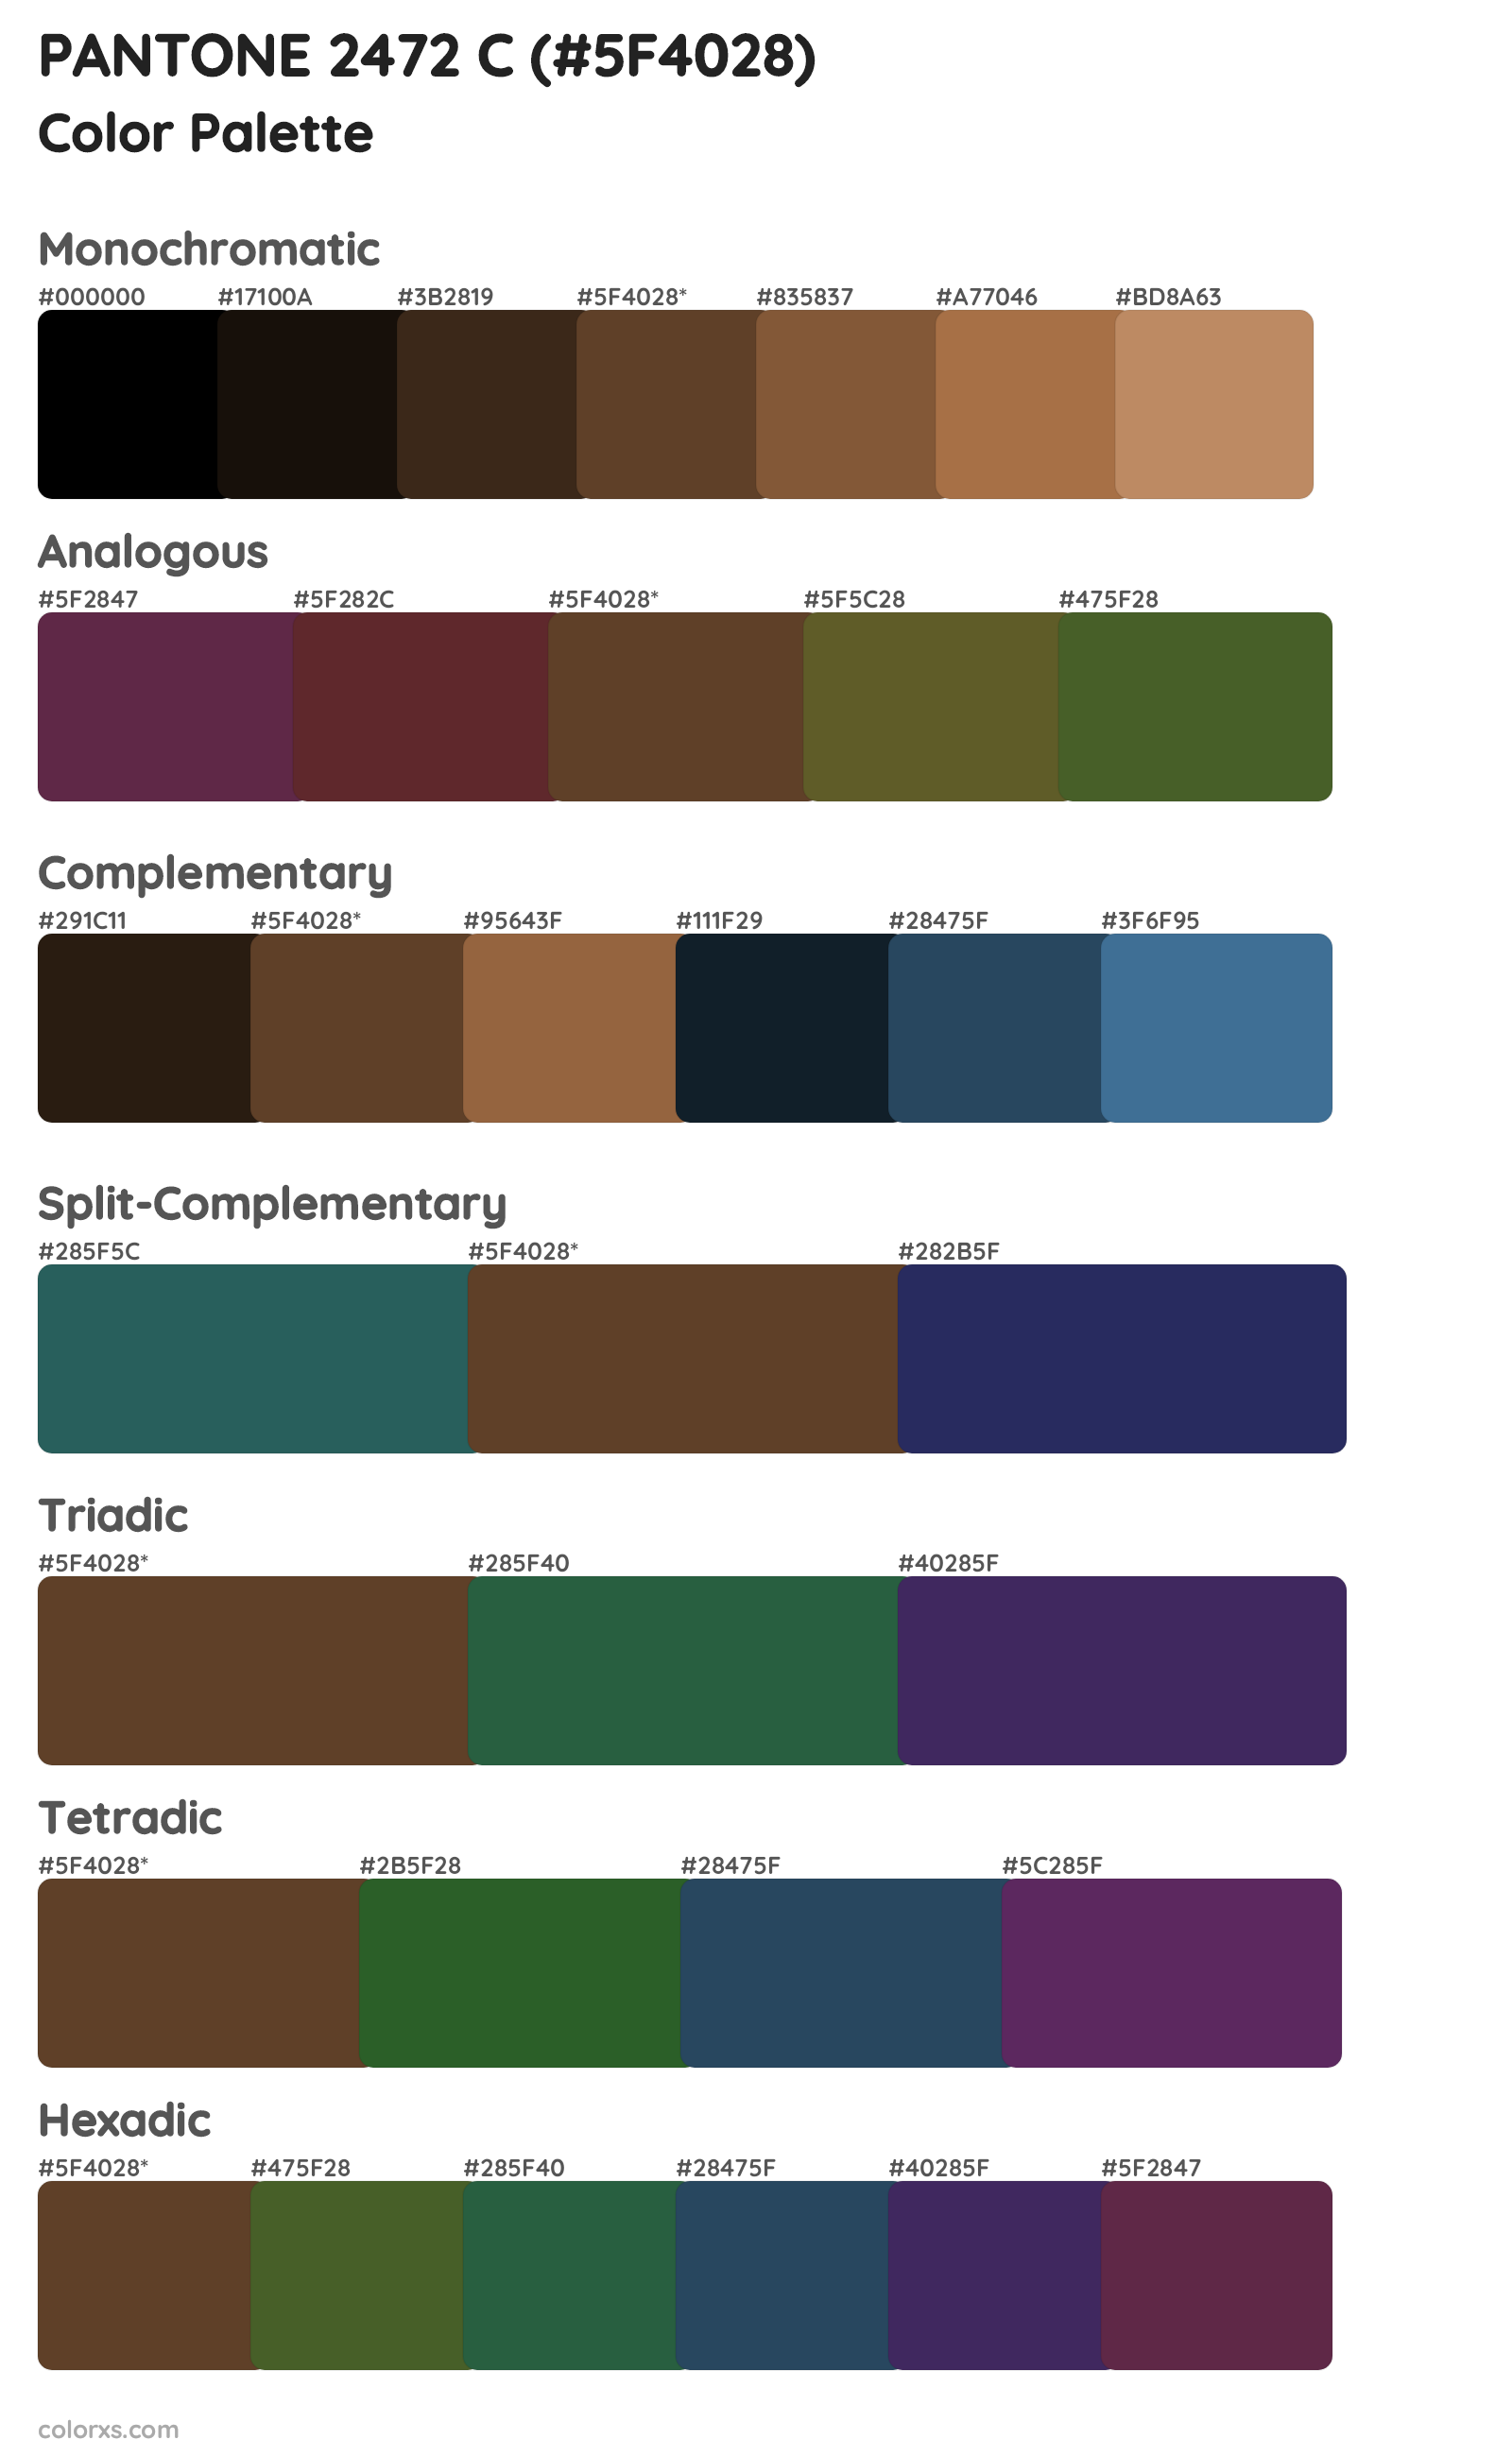 PANTONE 2472 C Color Scheme Palettes